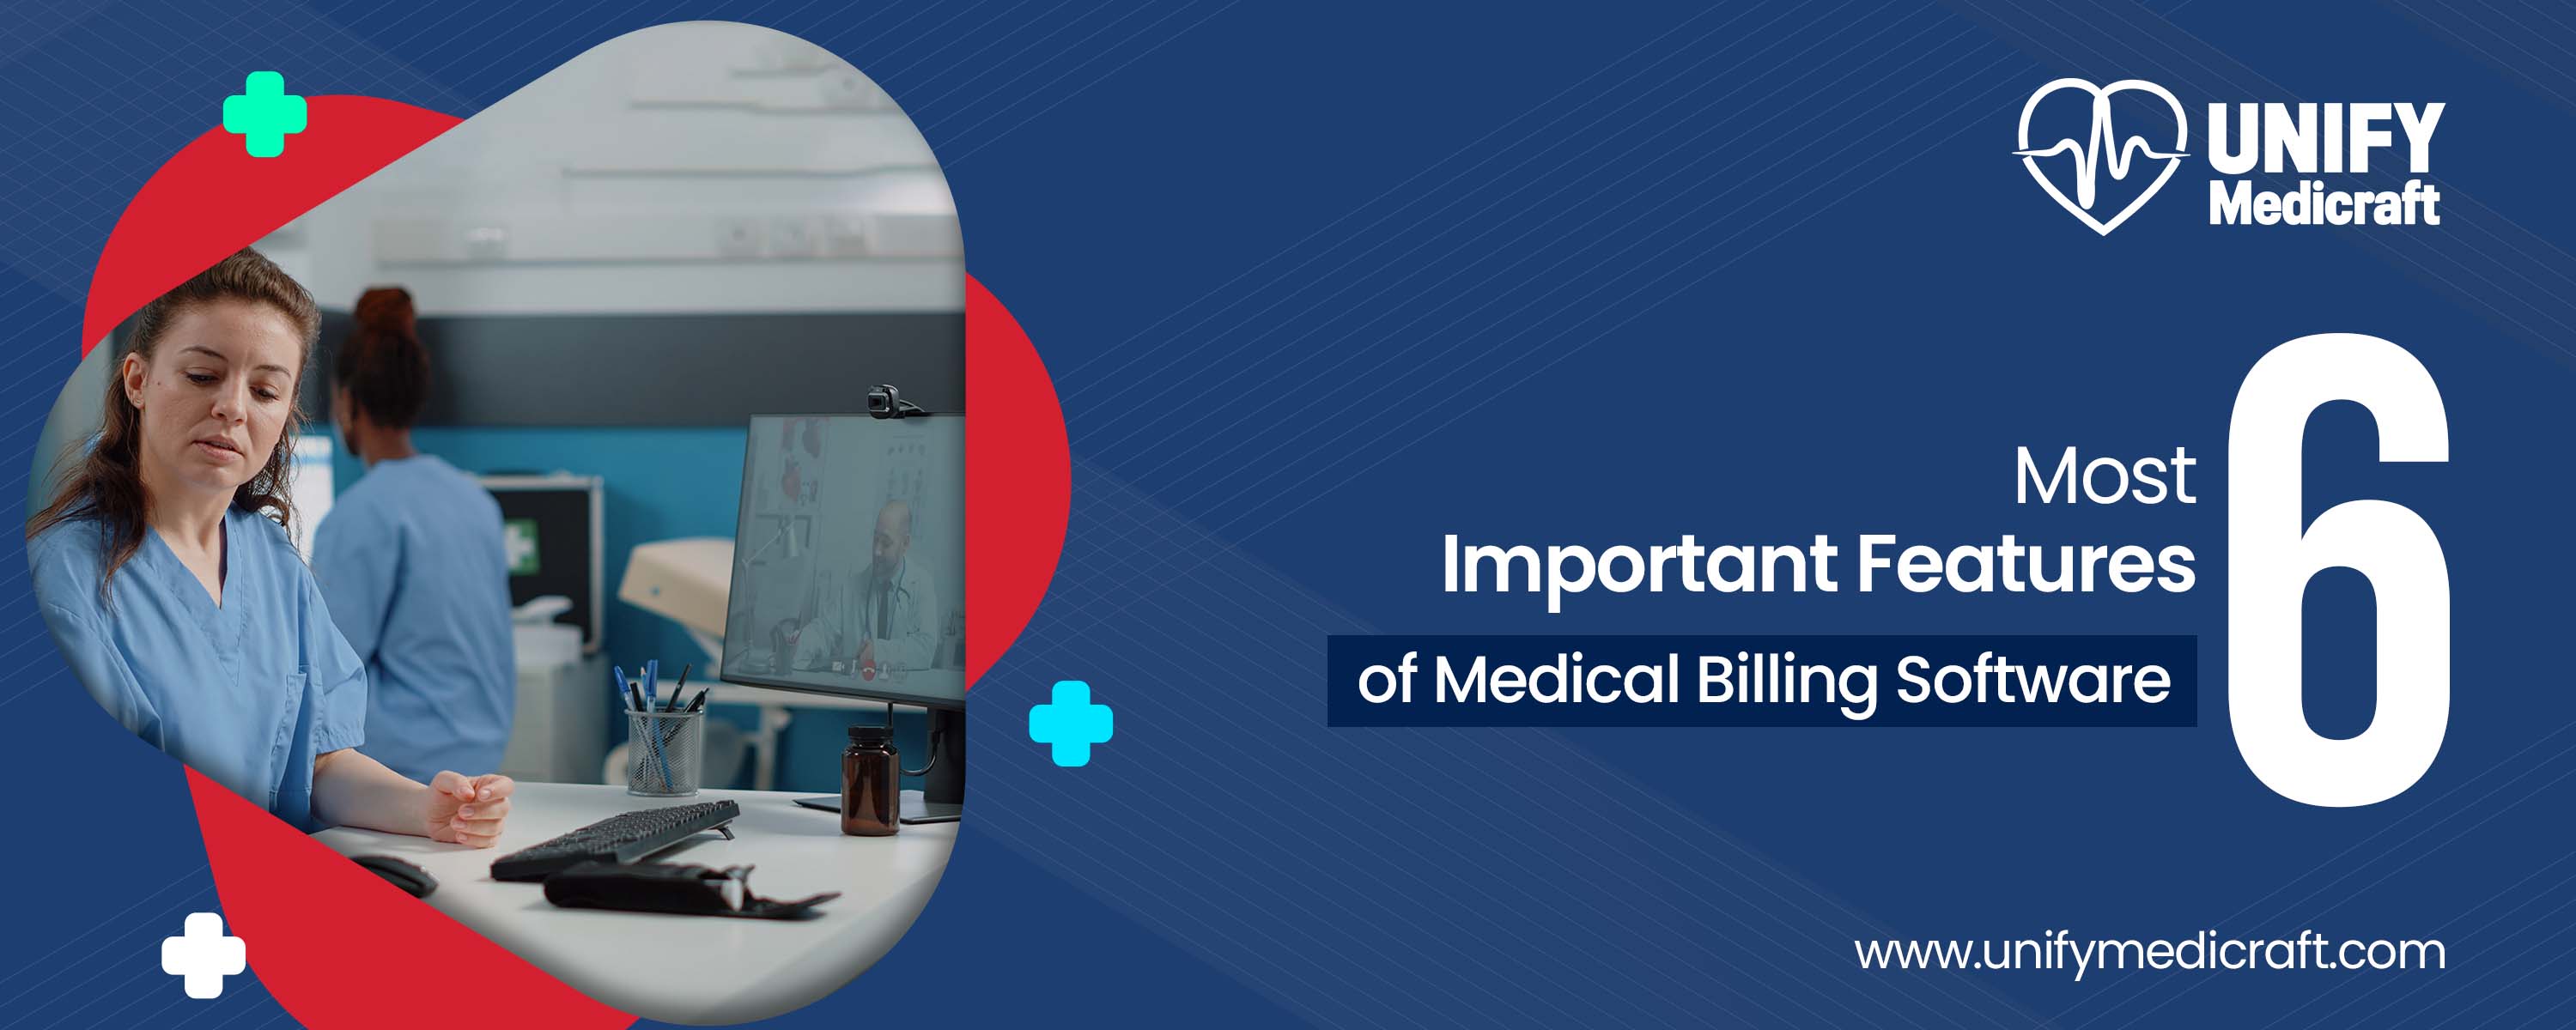 Medical Billing Software